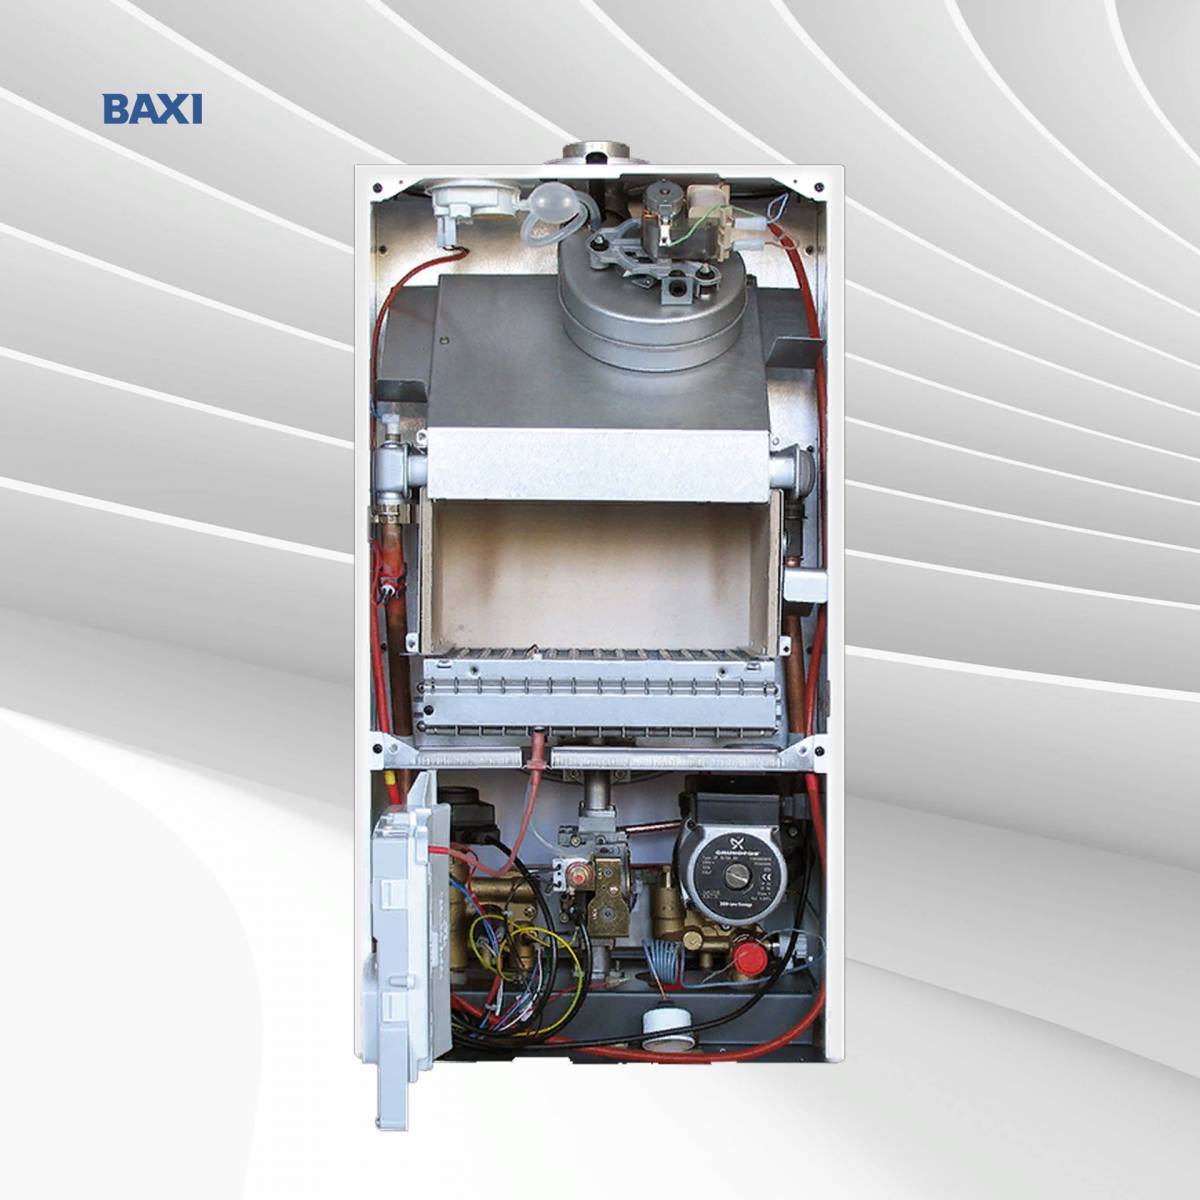 Отопительный котел baxi. Газовый котел Baxi FOURTECH 24 F. Газовый котел Baxi Eco-4s 1.24f. Газовый котел Baxi Eco four 24. Baxi FOURTECH 24.